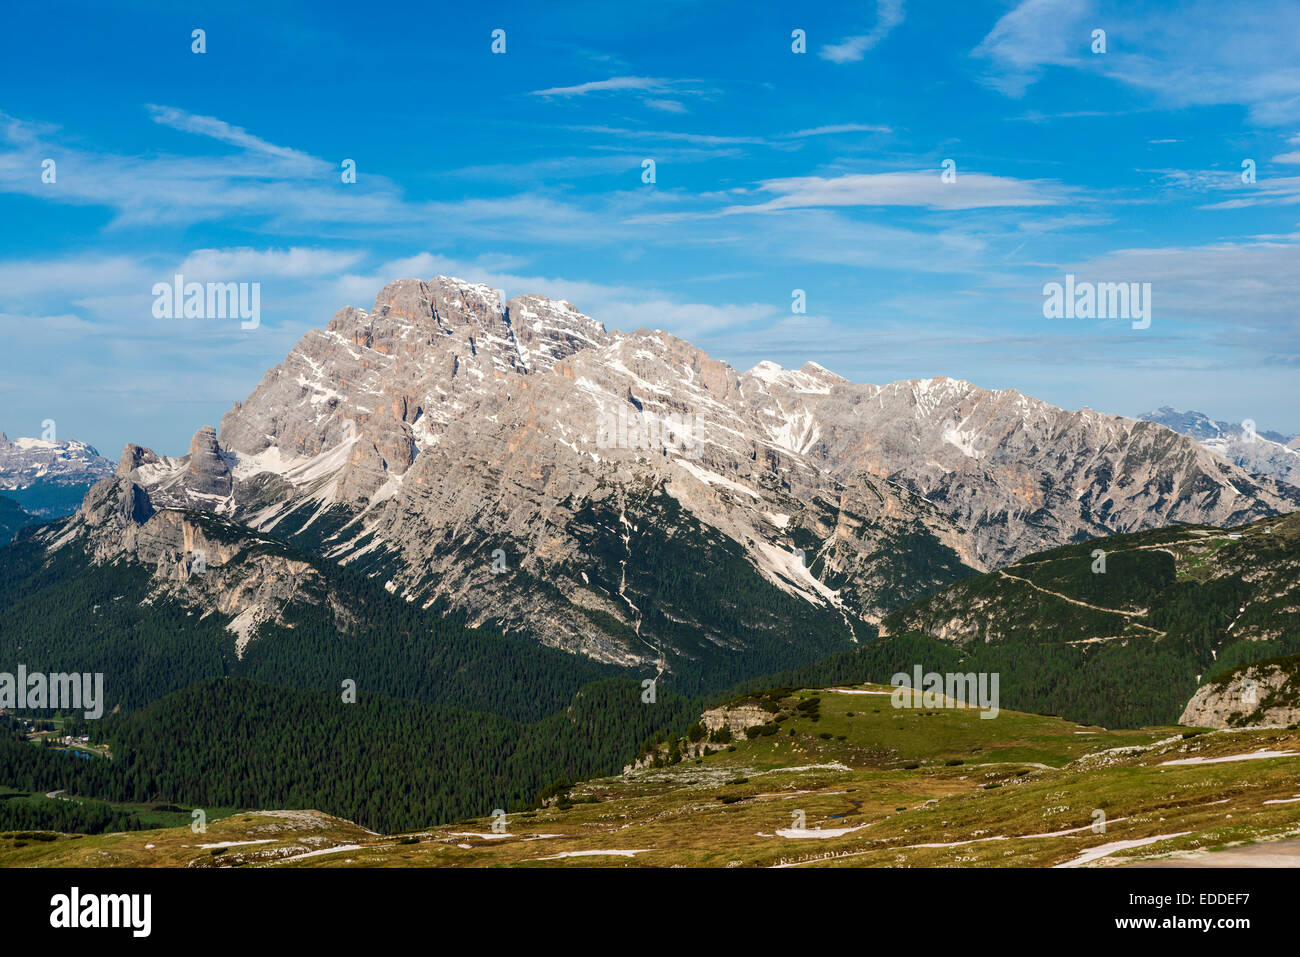 Monte Cristallo, Piz Popena, Dolomites, South Tyrol, Italy Stock Photo